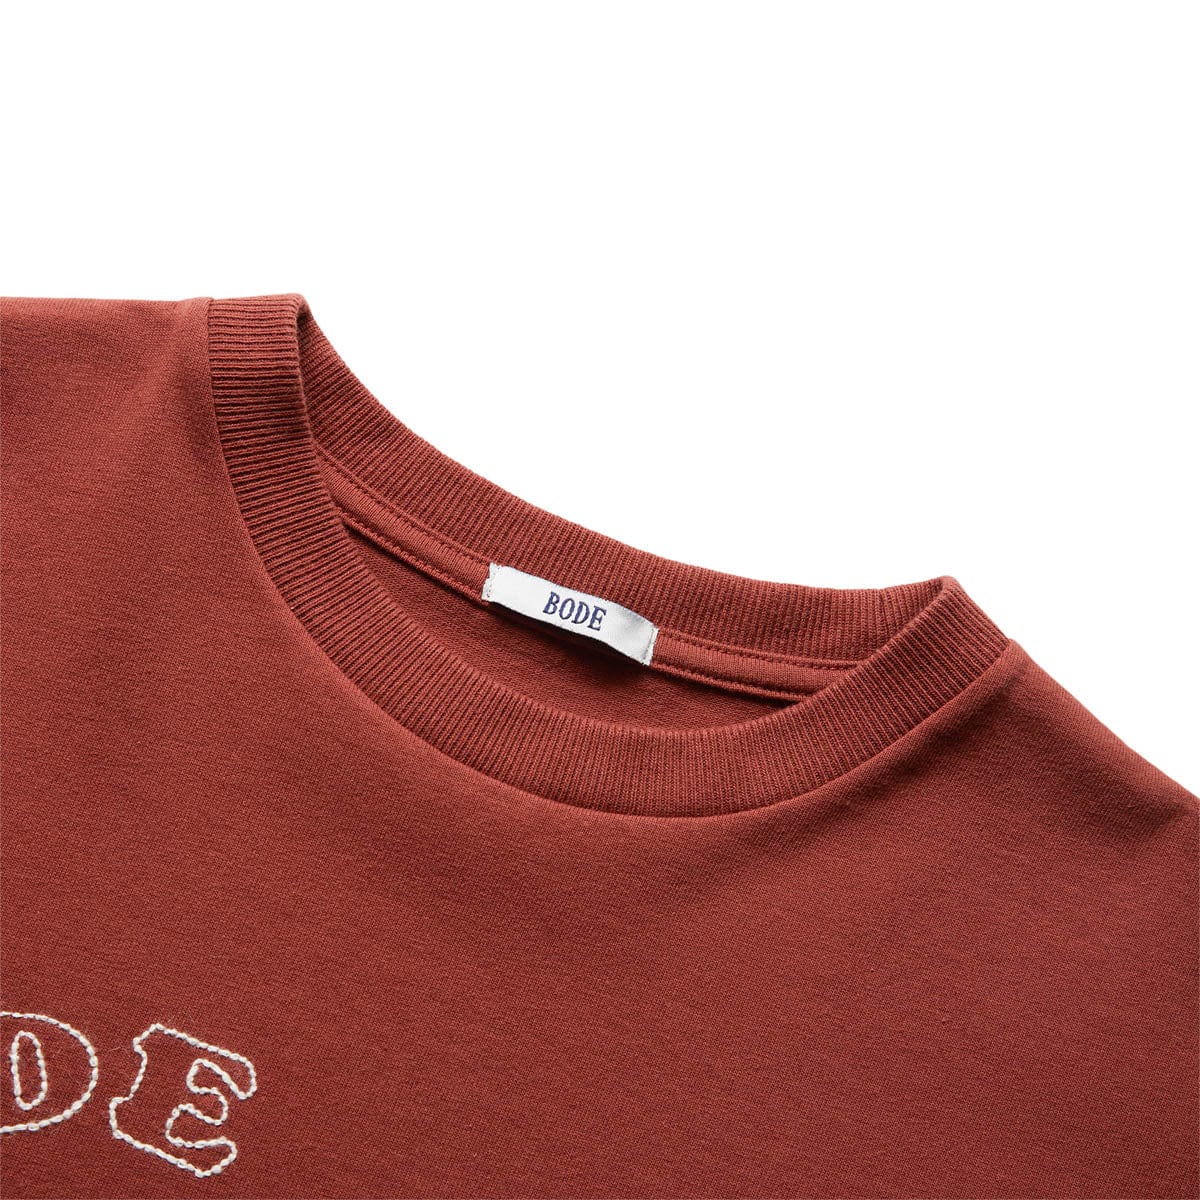 Erweitern Sie die Garderobe Ihrer Kleinen mit dem Rooster T-Shirt von um  einen bezaubernden Print - SHIRT BROWN | EMBROIDERED PONY T - GmarShops